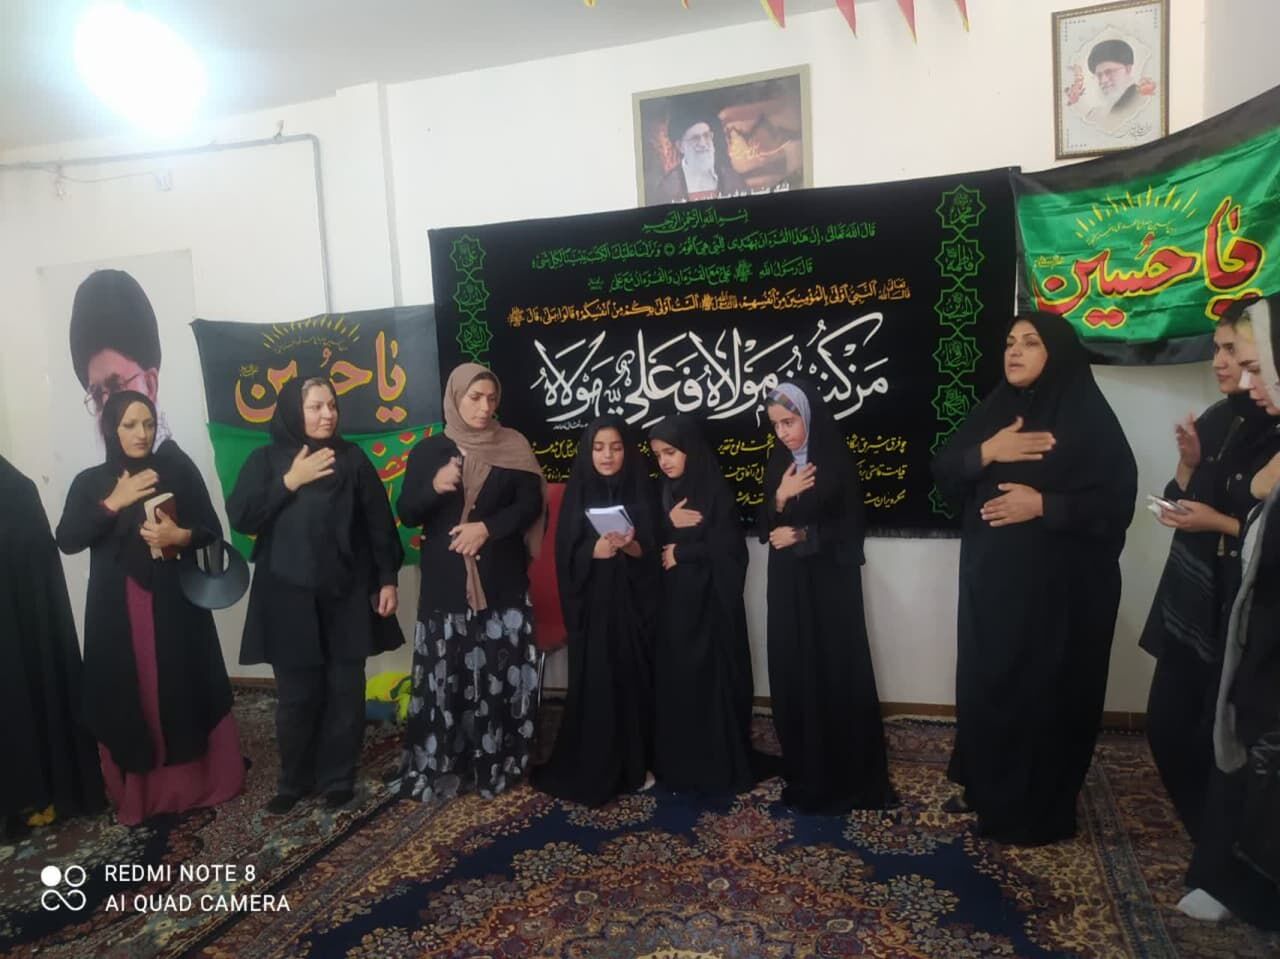 برگزاری مراسم عزاداری ویژه بانوان مسجدی در کرمانشاه